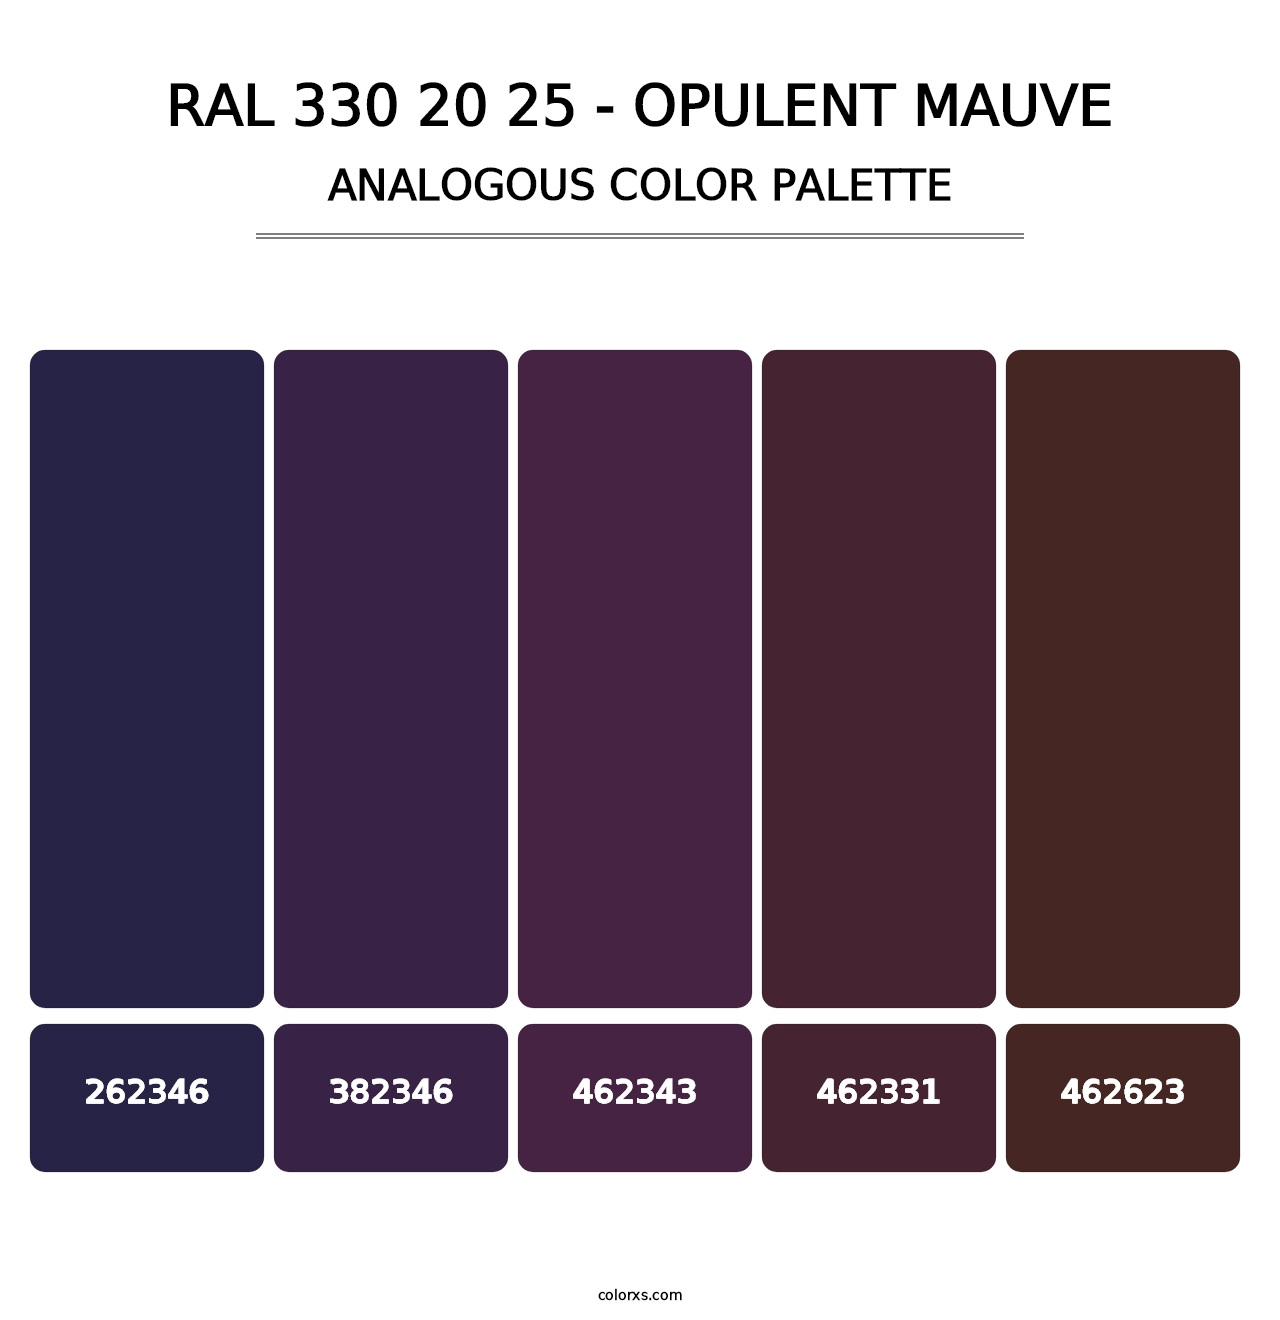 RAL 330 20 25 - Opulent Mauve - Analogous Color Palette